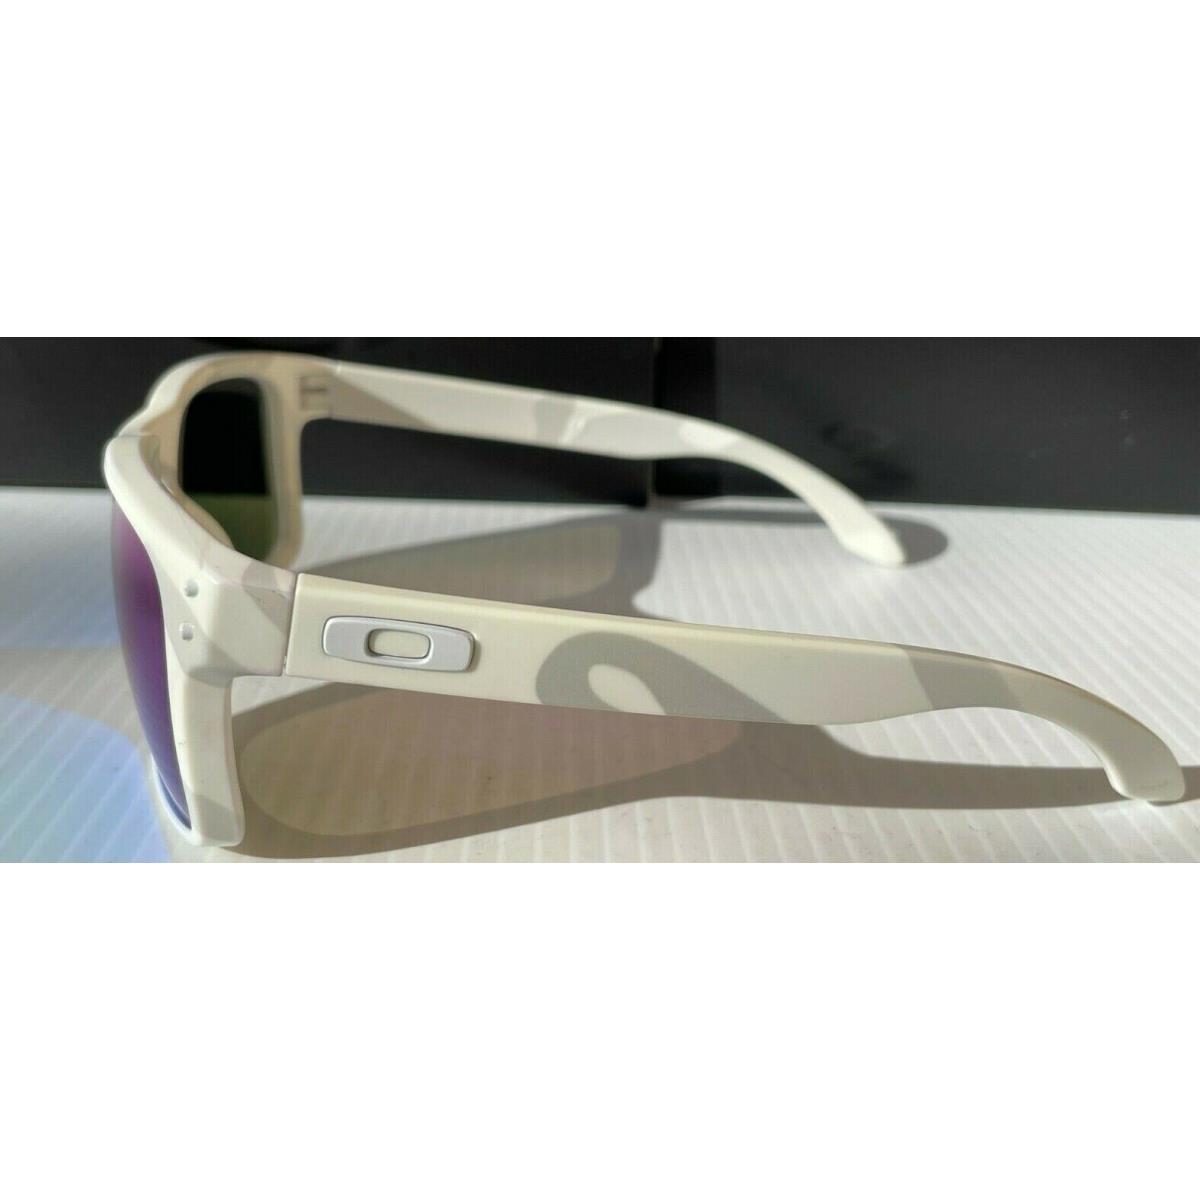 Oakley sunglasses Holbrook - White Frame, Green Lens